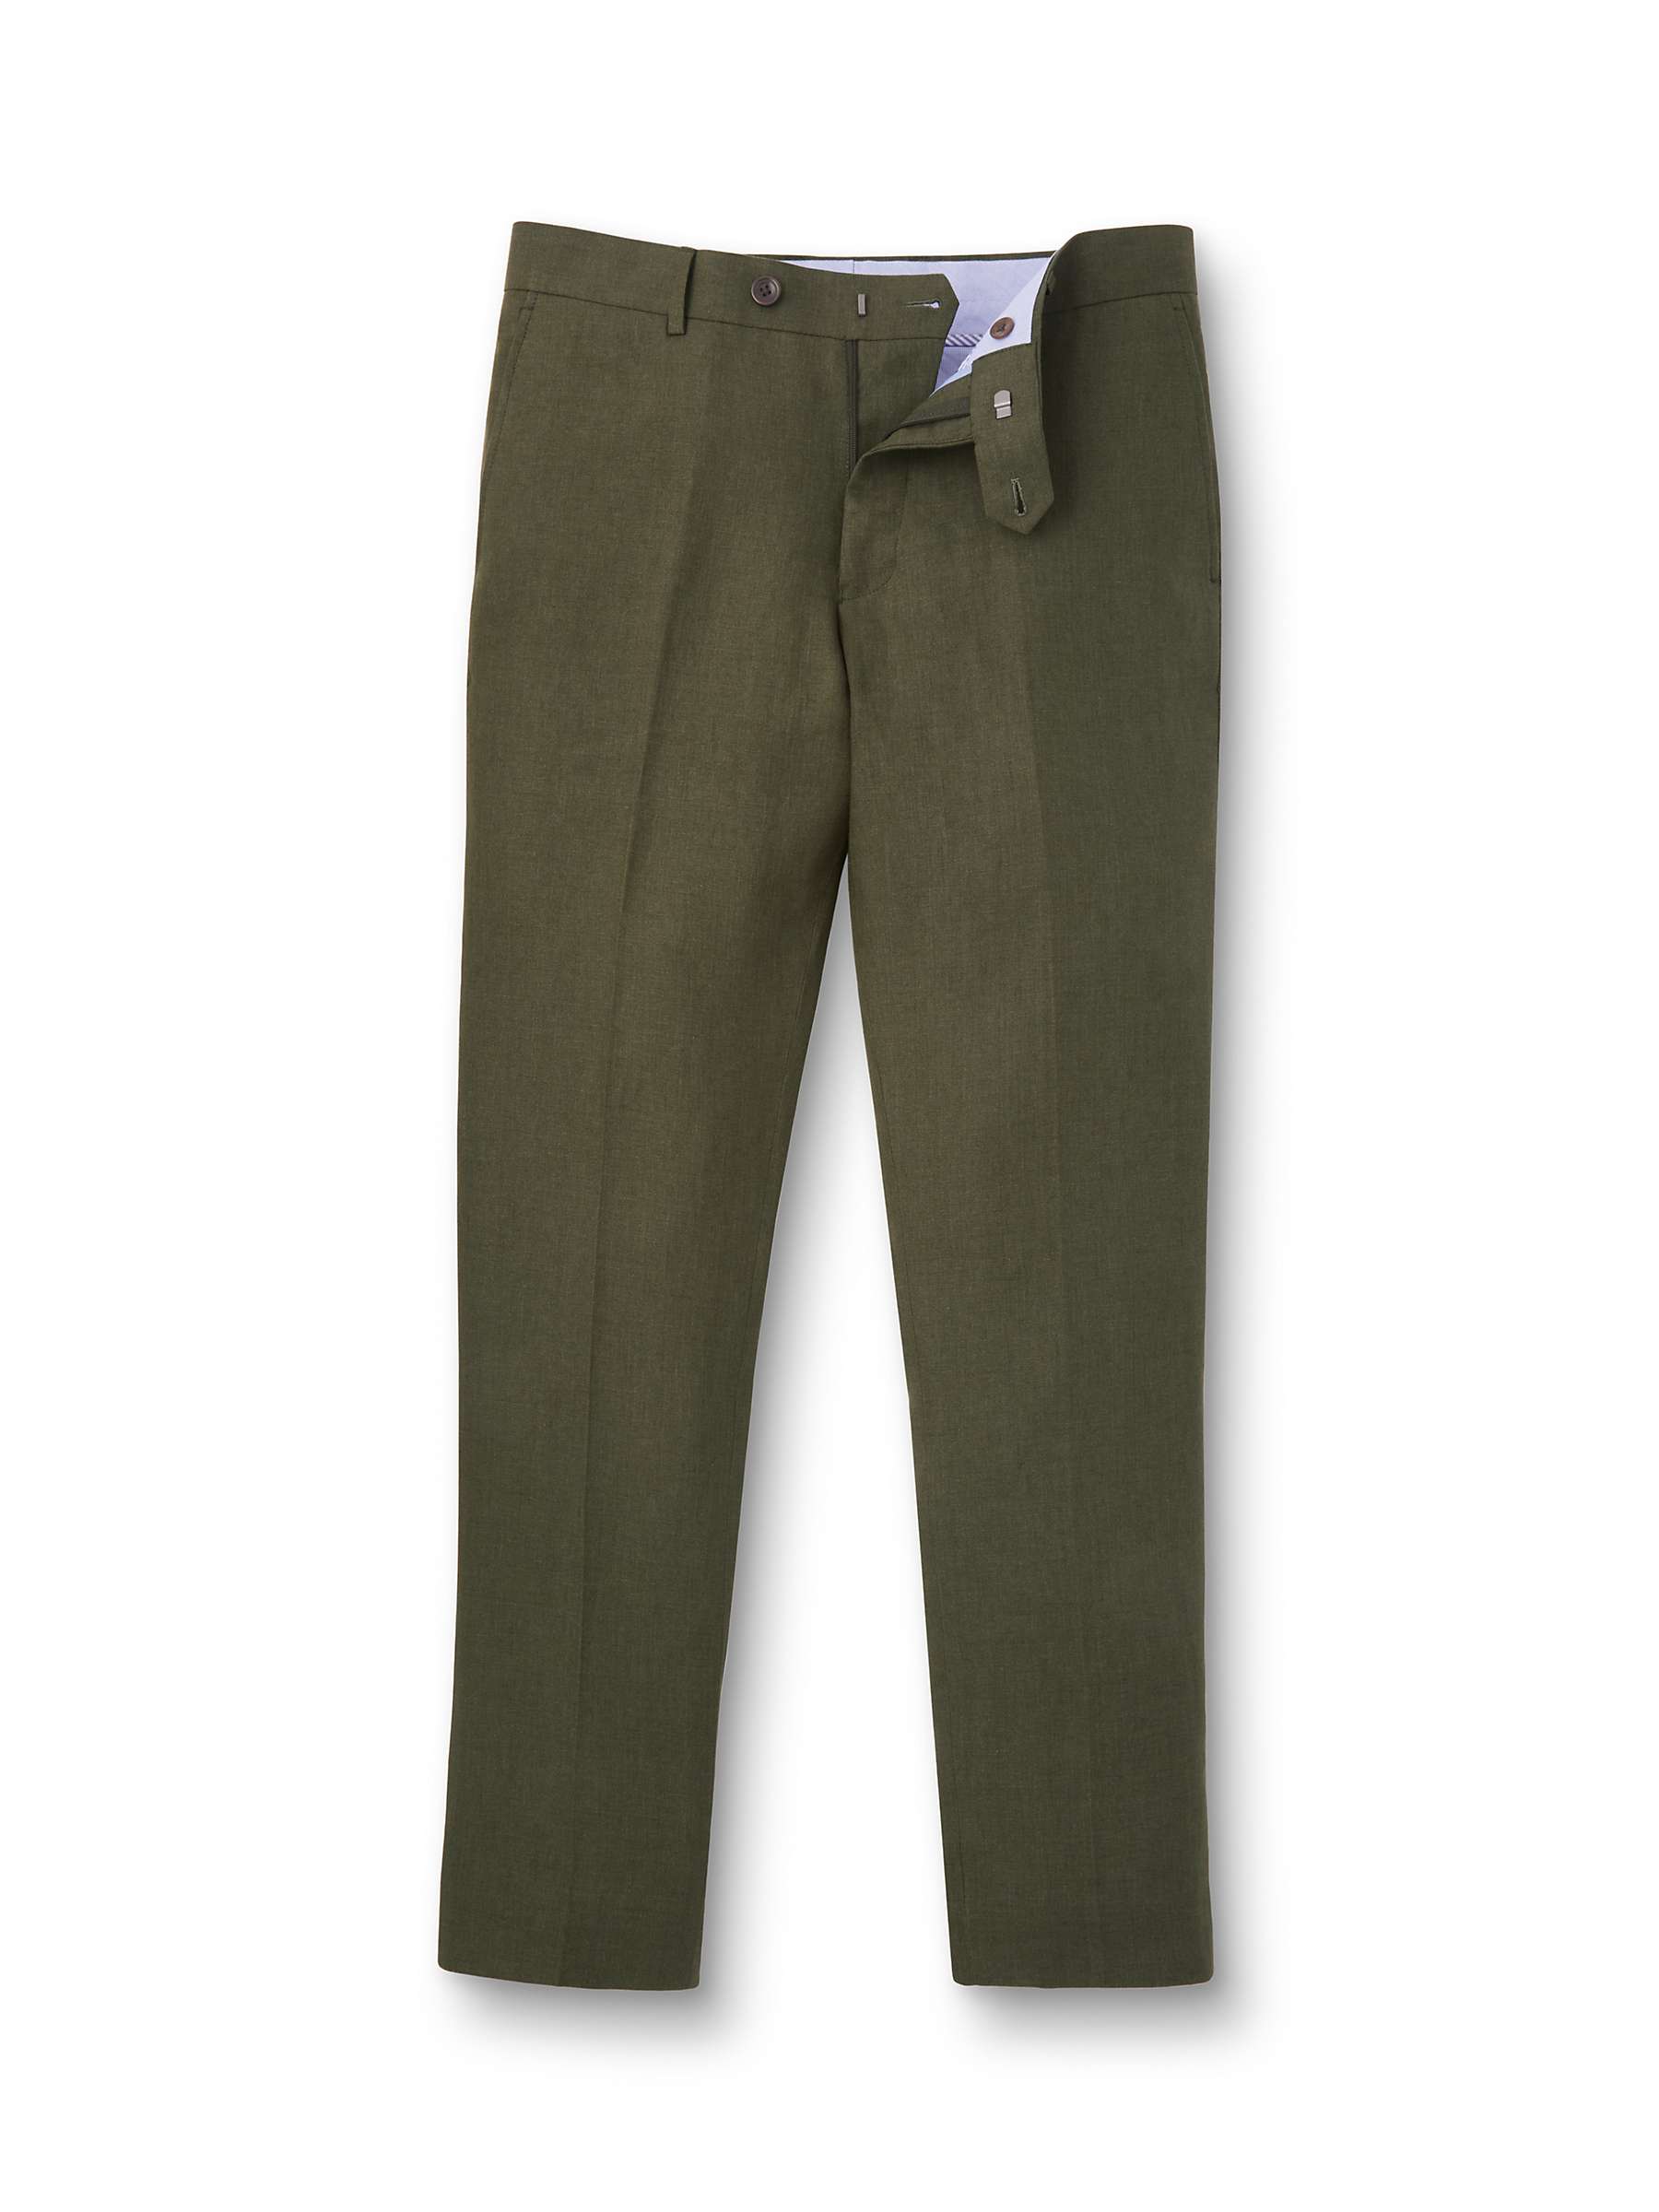 Buy Charles Tyrwhitt Slim Fit Linen Trousers Online at johnlewis.com